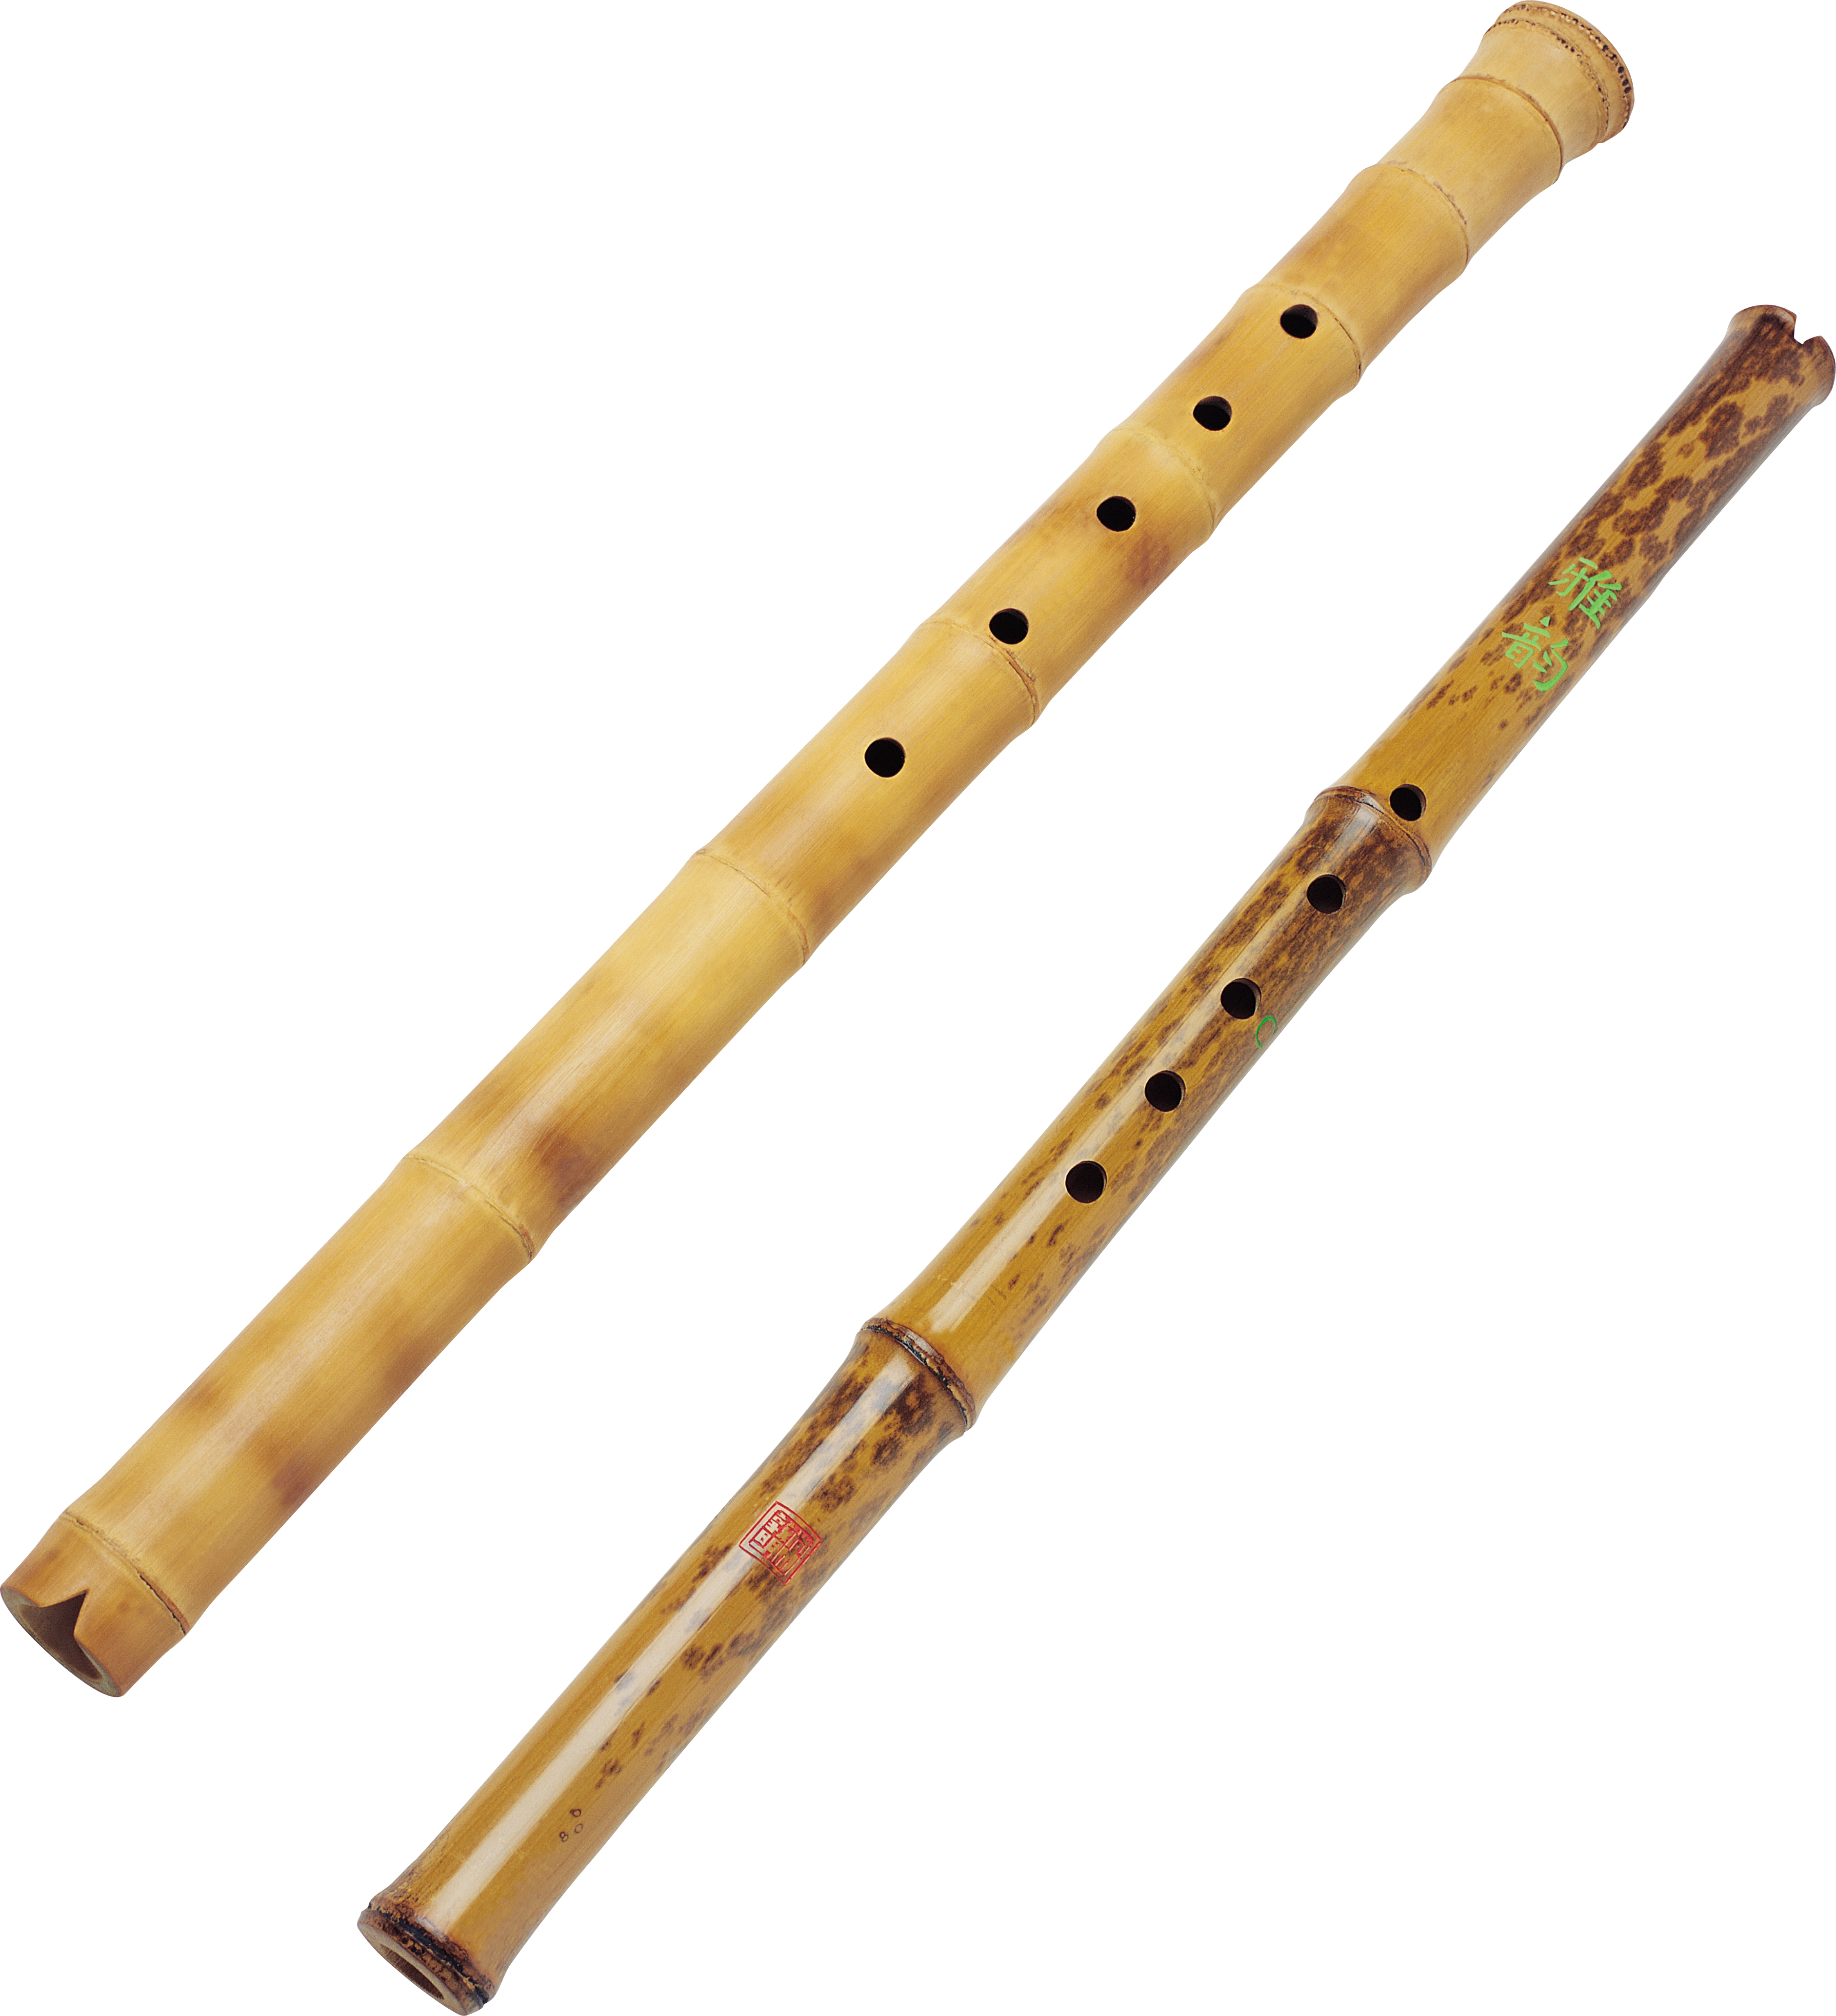 flute clipart wooden flute